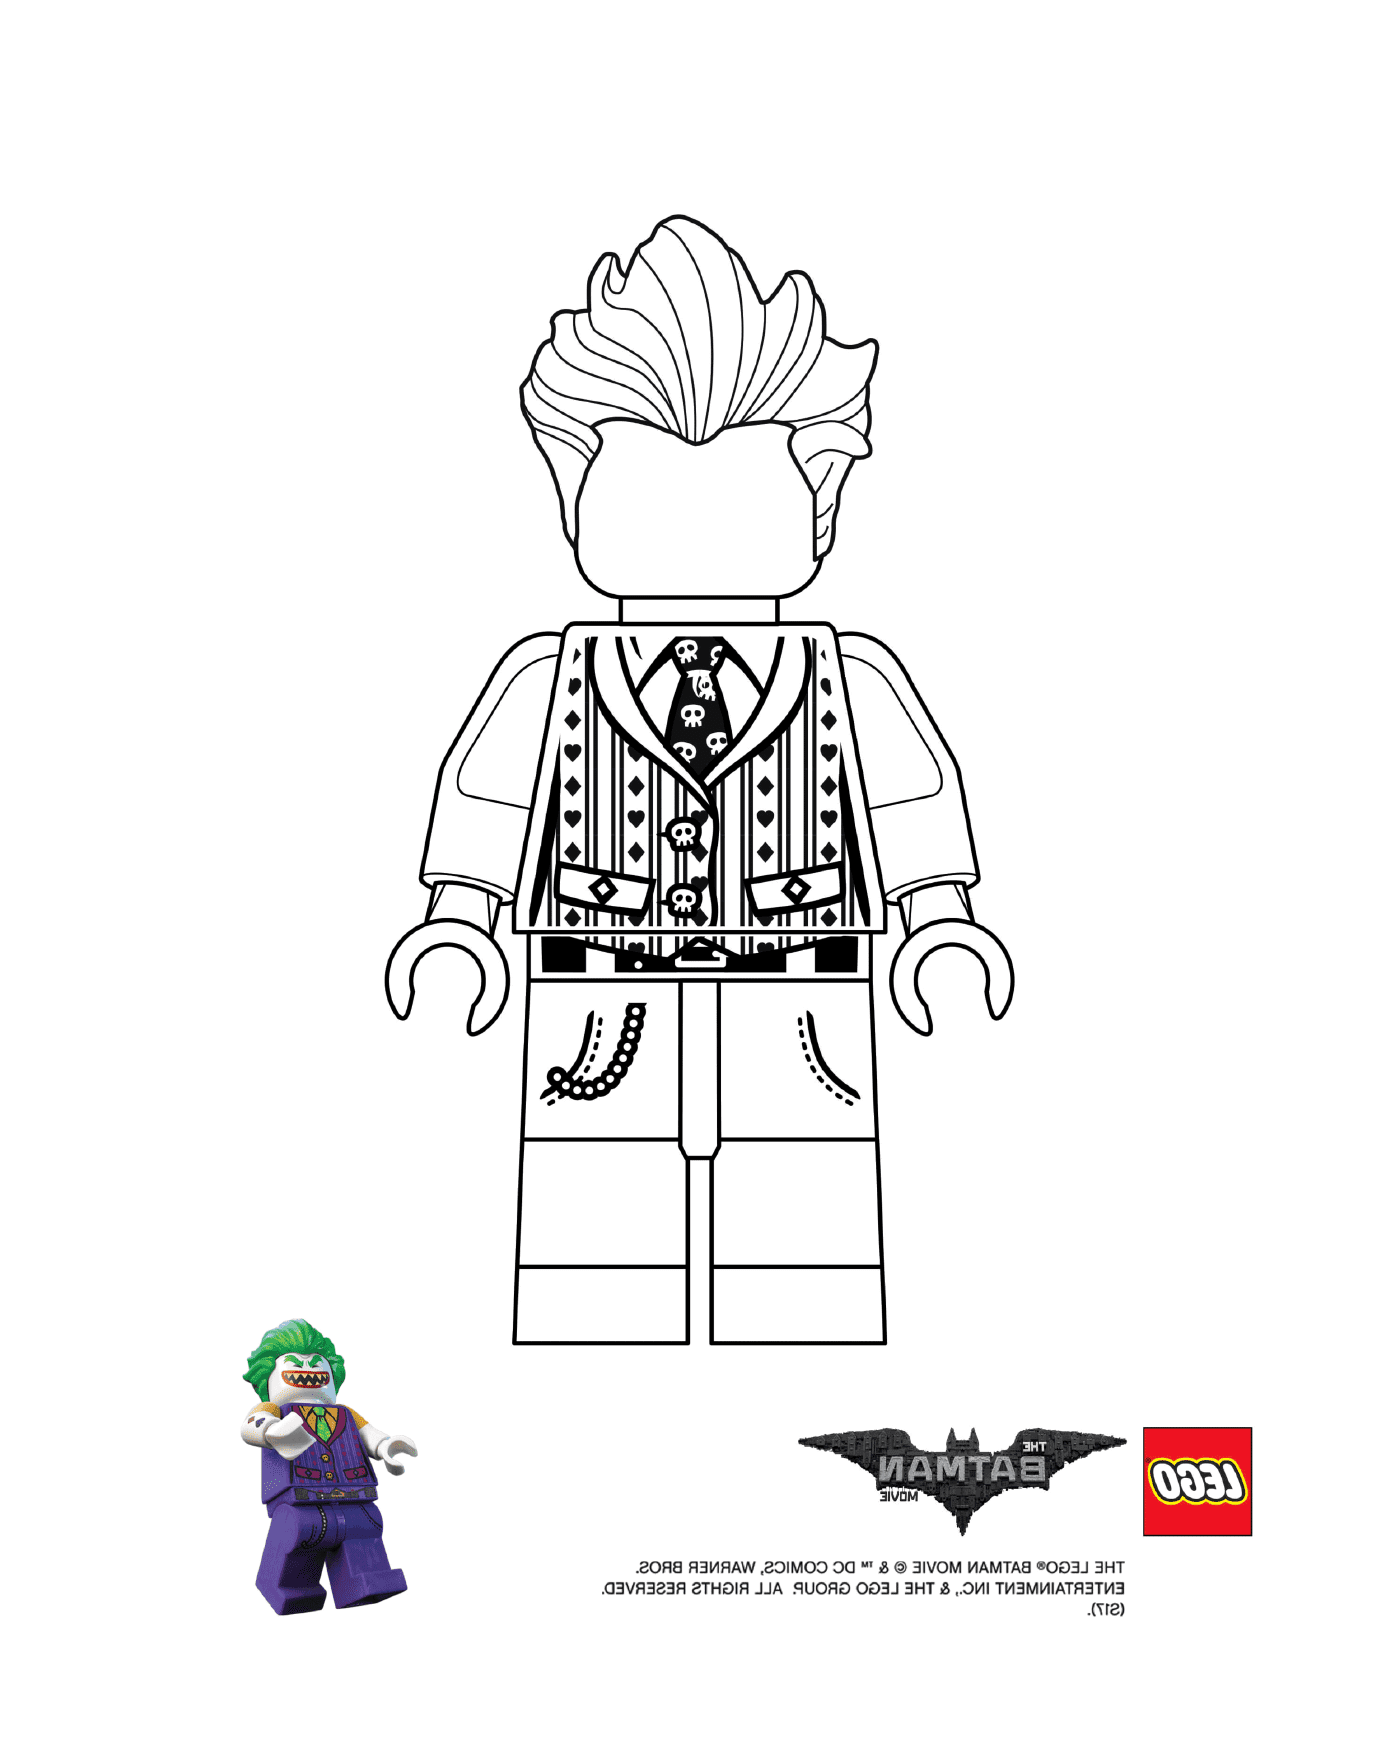  Lego do filme Lego Batman 